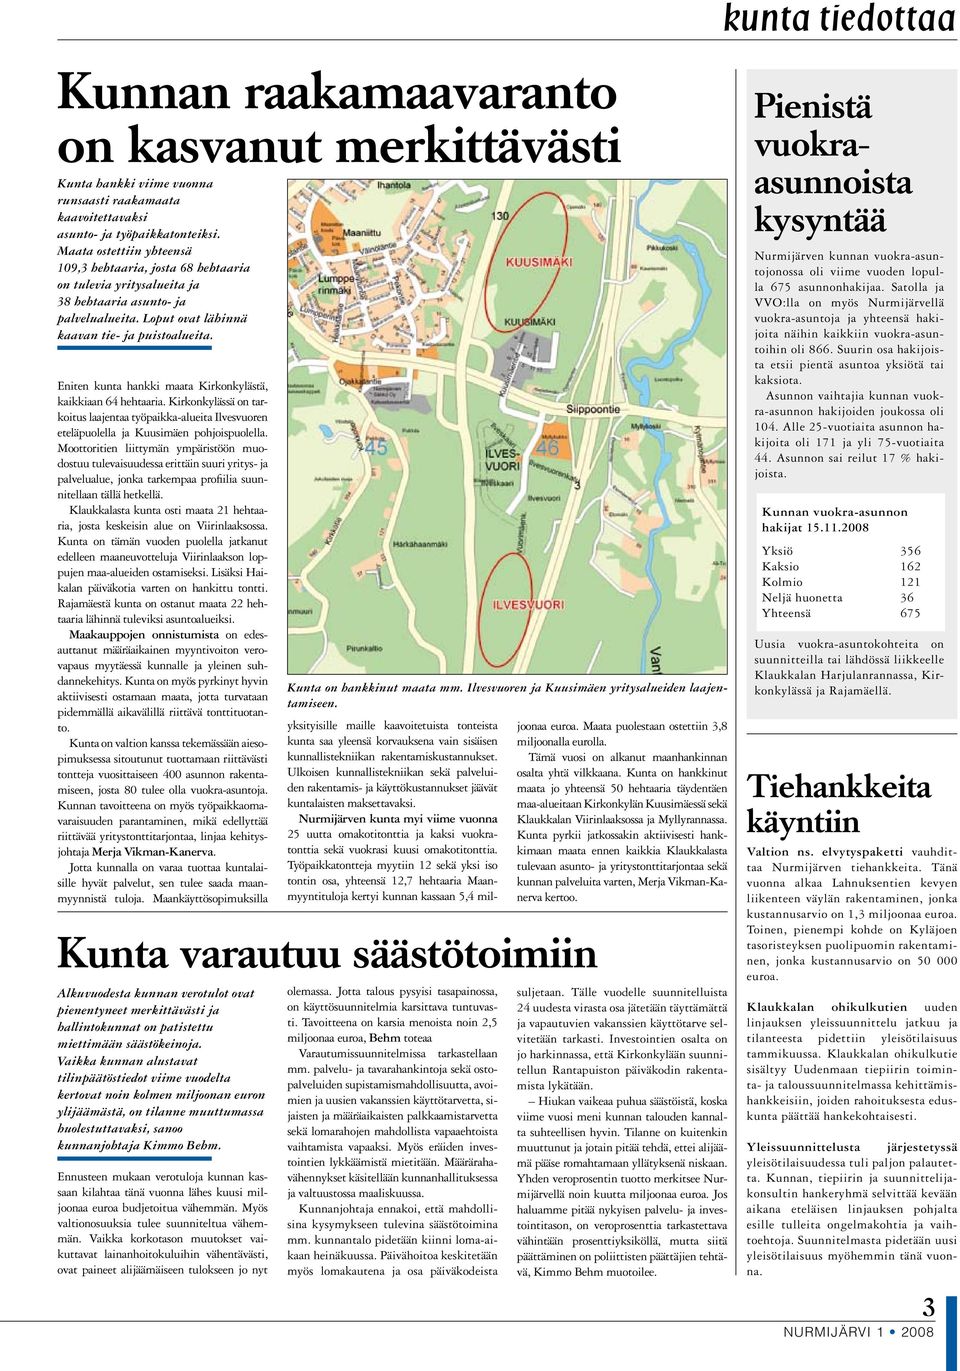 Eniten kunta hankki maata Kirkonkylästä, kaikkiaan 64 hehtaaria. Kirkonkylässä on tarkoitus laajentaa työpaikka-alueita Ilvesvuoren eteläpuolella ja Kuusimäen pohjoispuolella.